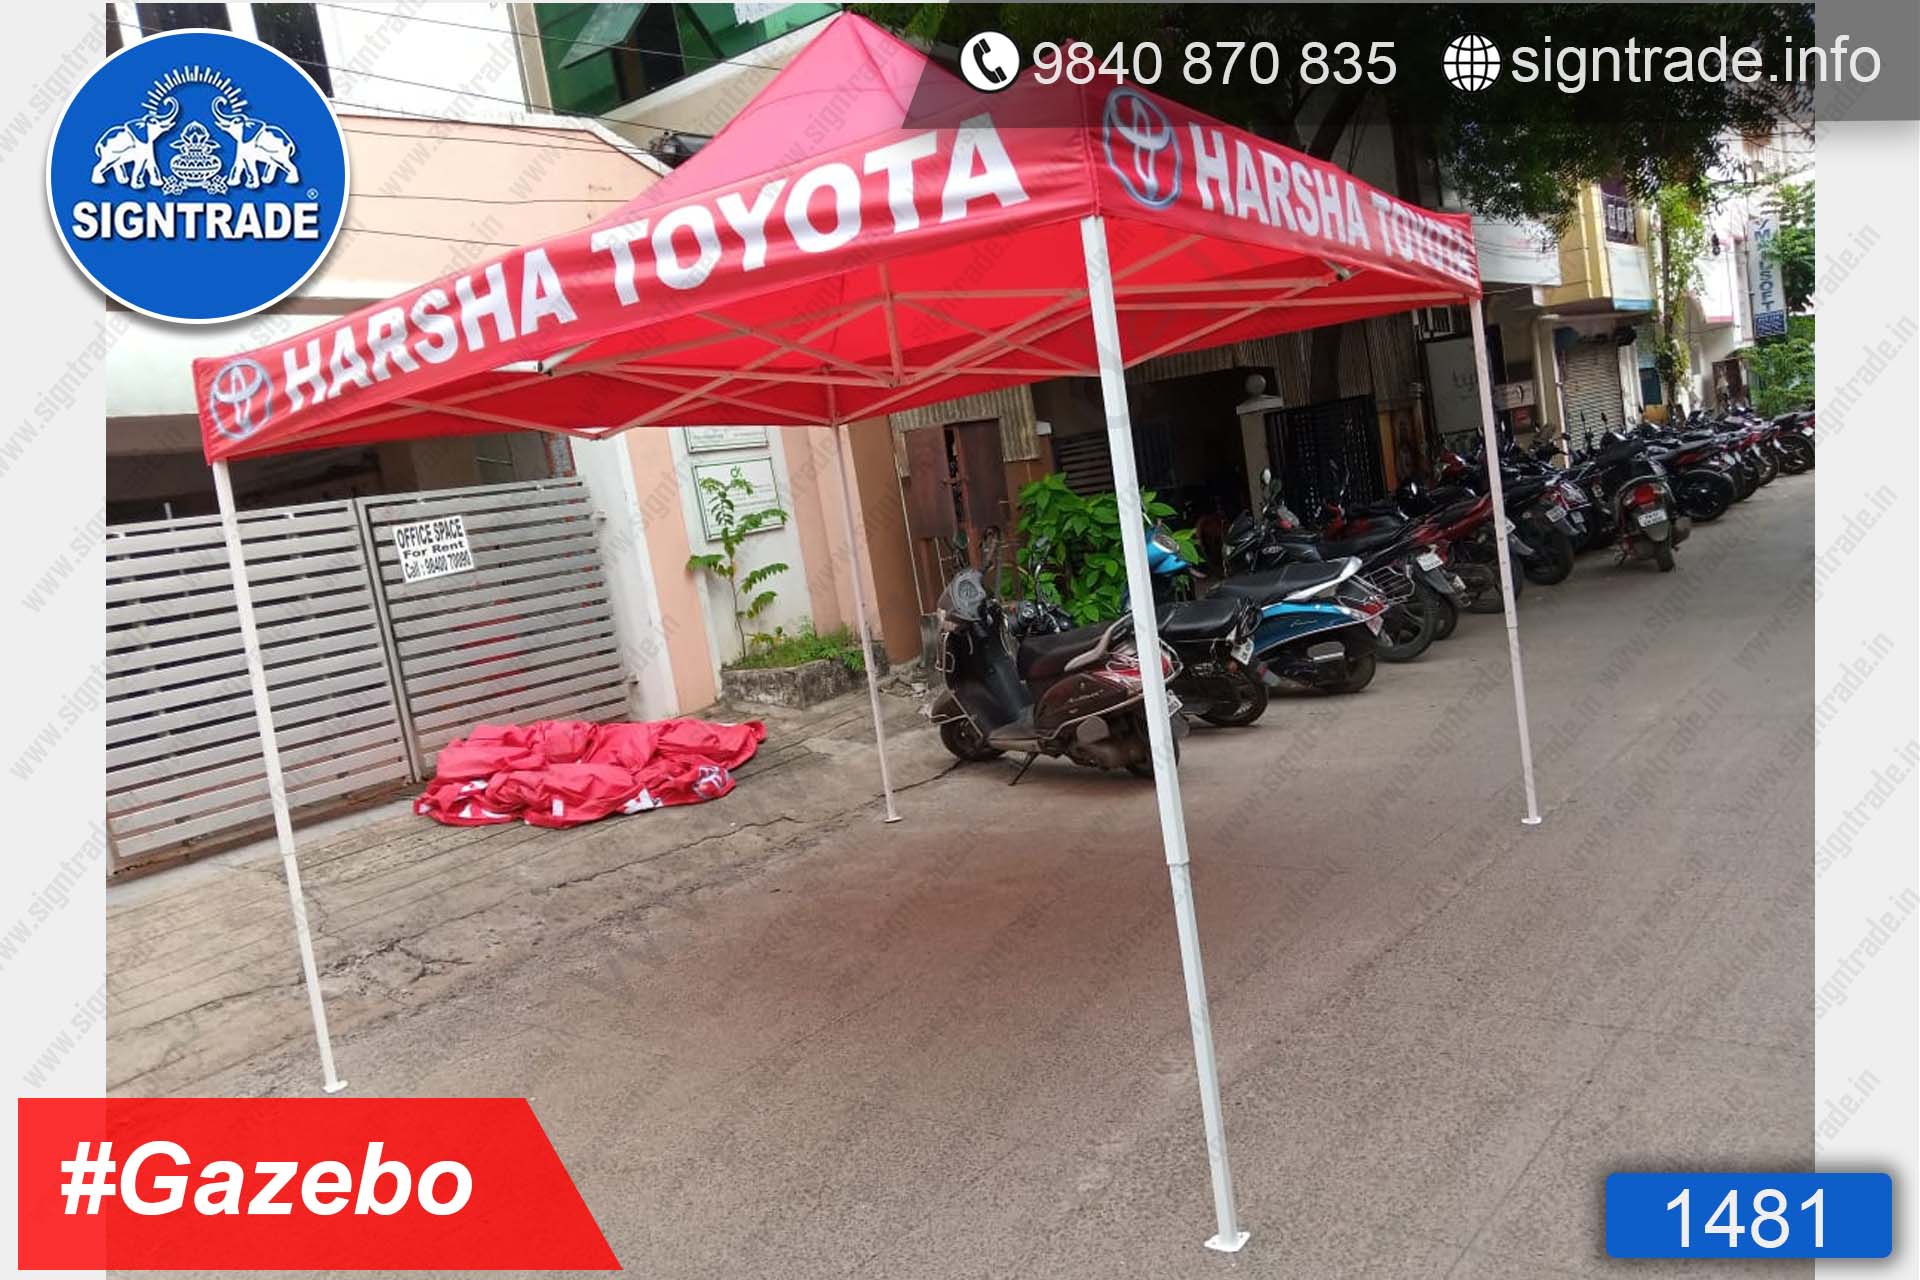 Harsha Toyota - Chennai - Promotional Gazebo - SIGNTRADE - Customised Promotional Gazebo Tent Manufacturer in Chennai